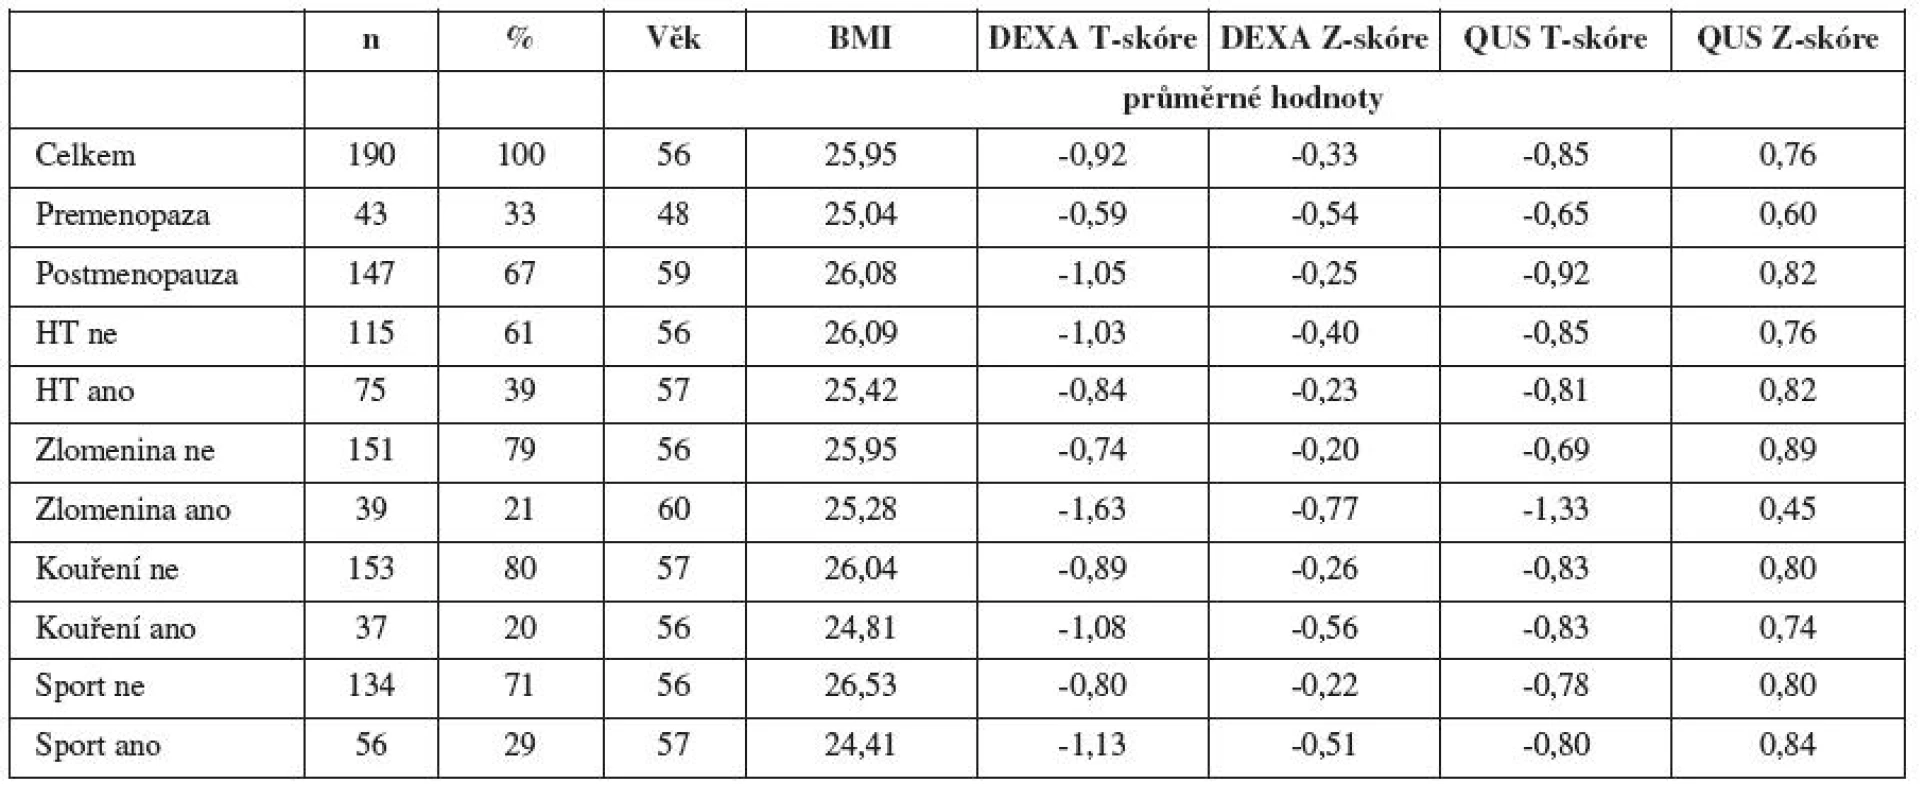 Charakteristika souboru a přehled výsledků (HT – hormonální substituční terapie, BMI – body mass index)